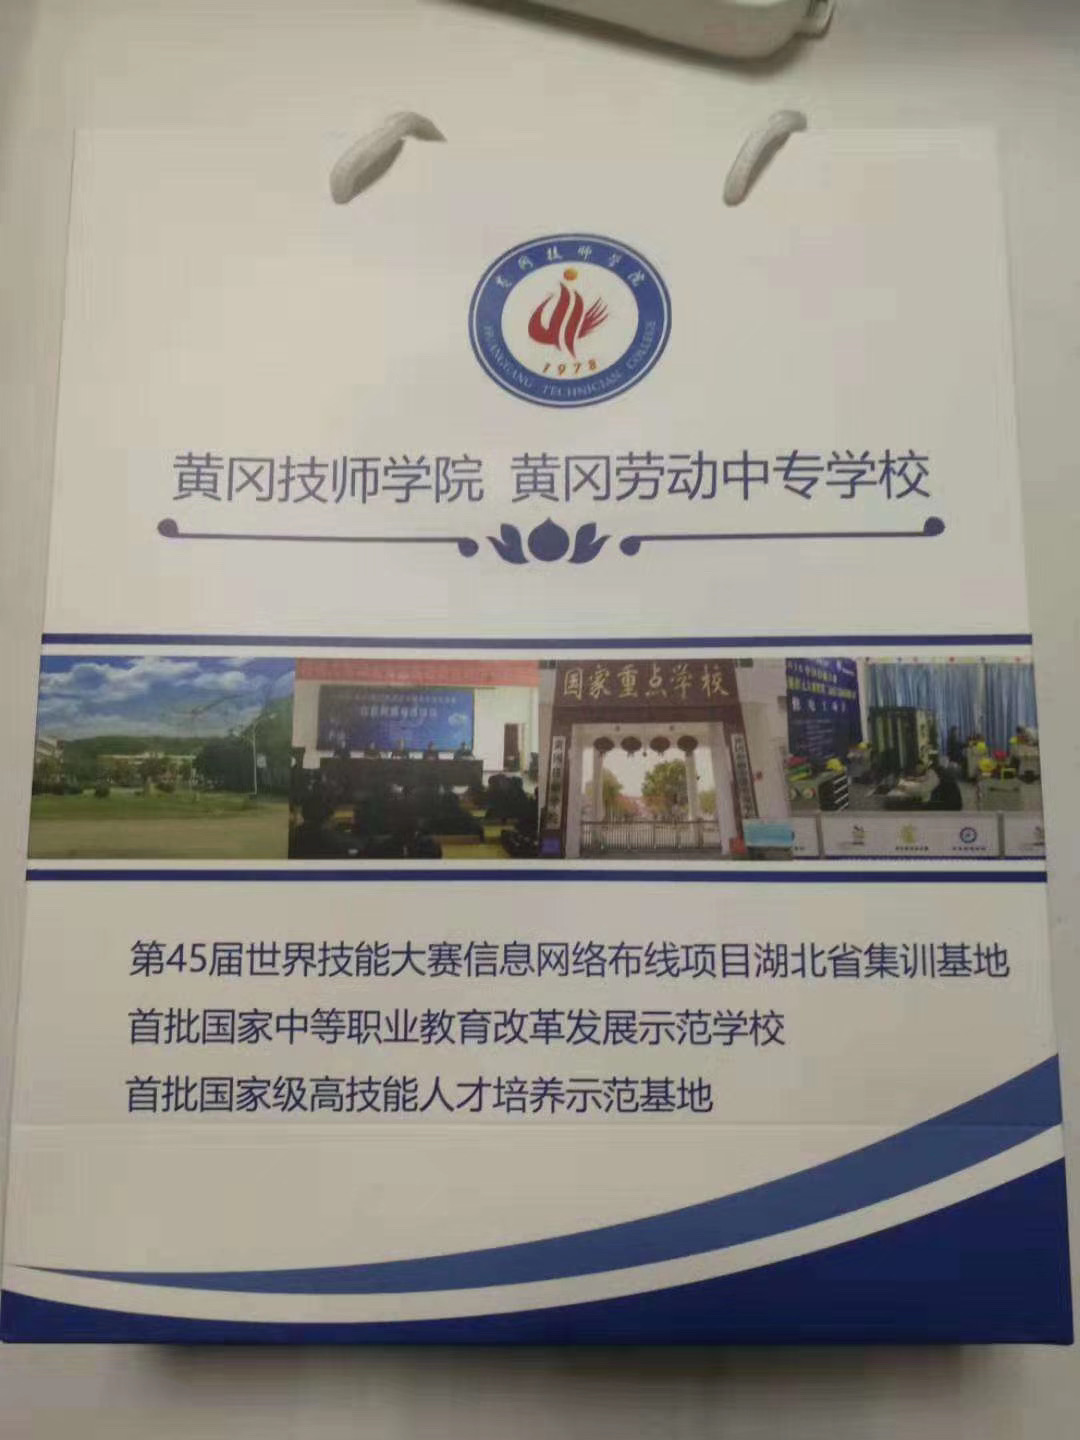 2019年湖北省电子技术职业技能大赛